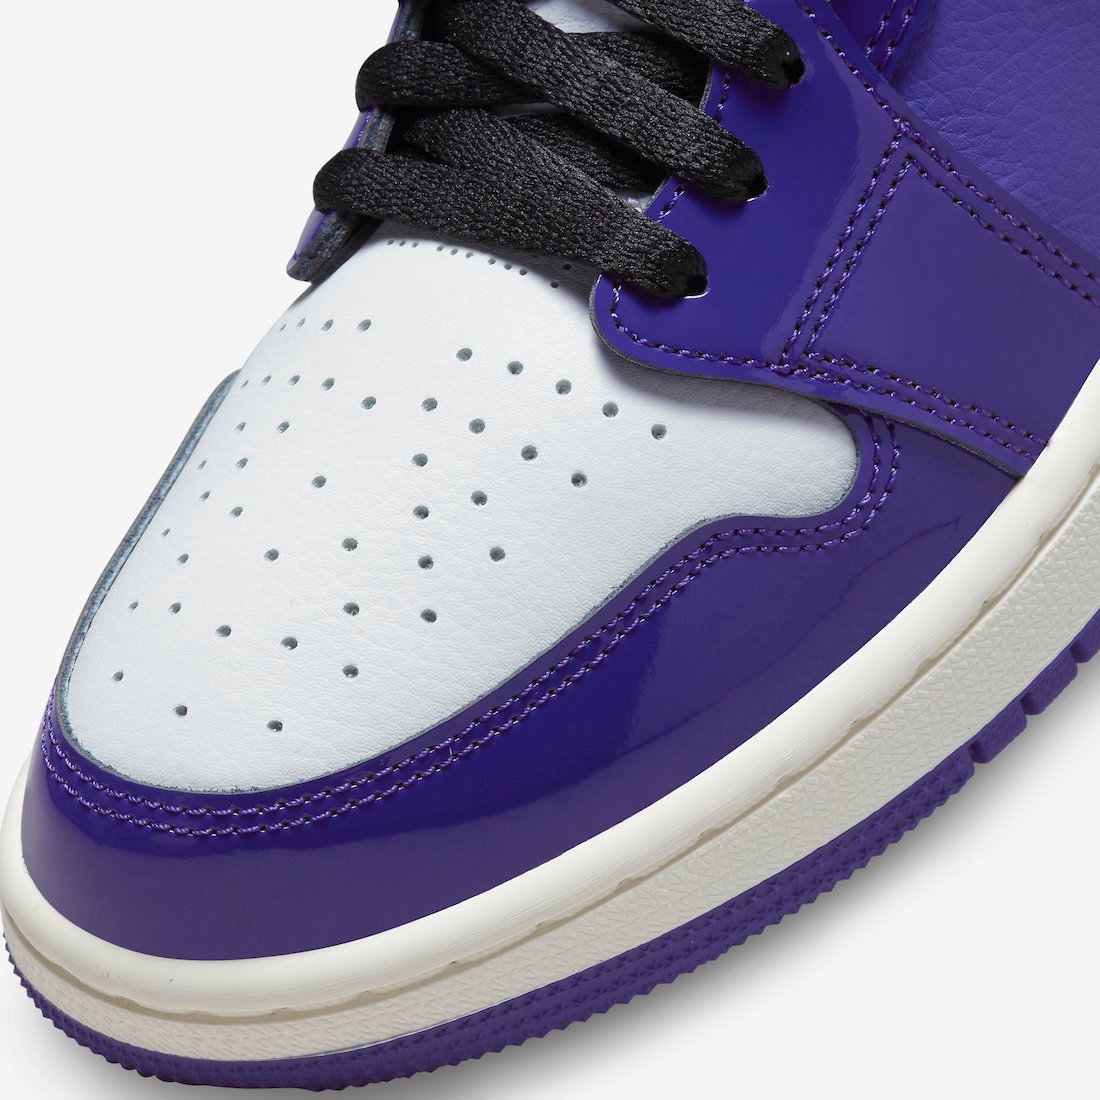 Air Jordan 1 Zoom CMFT Purple Patent CT0979-505 Release Date